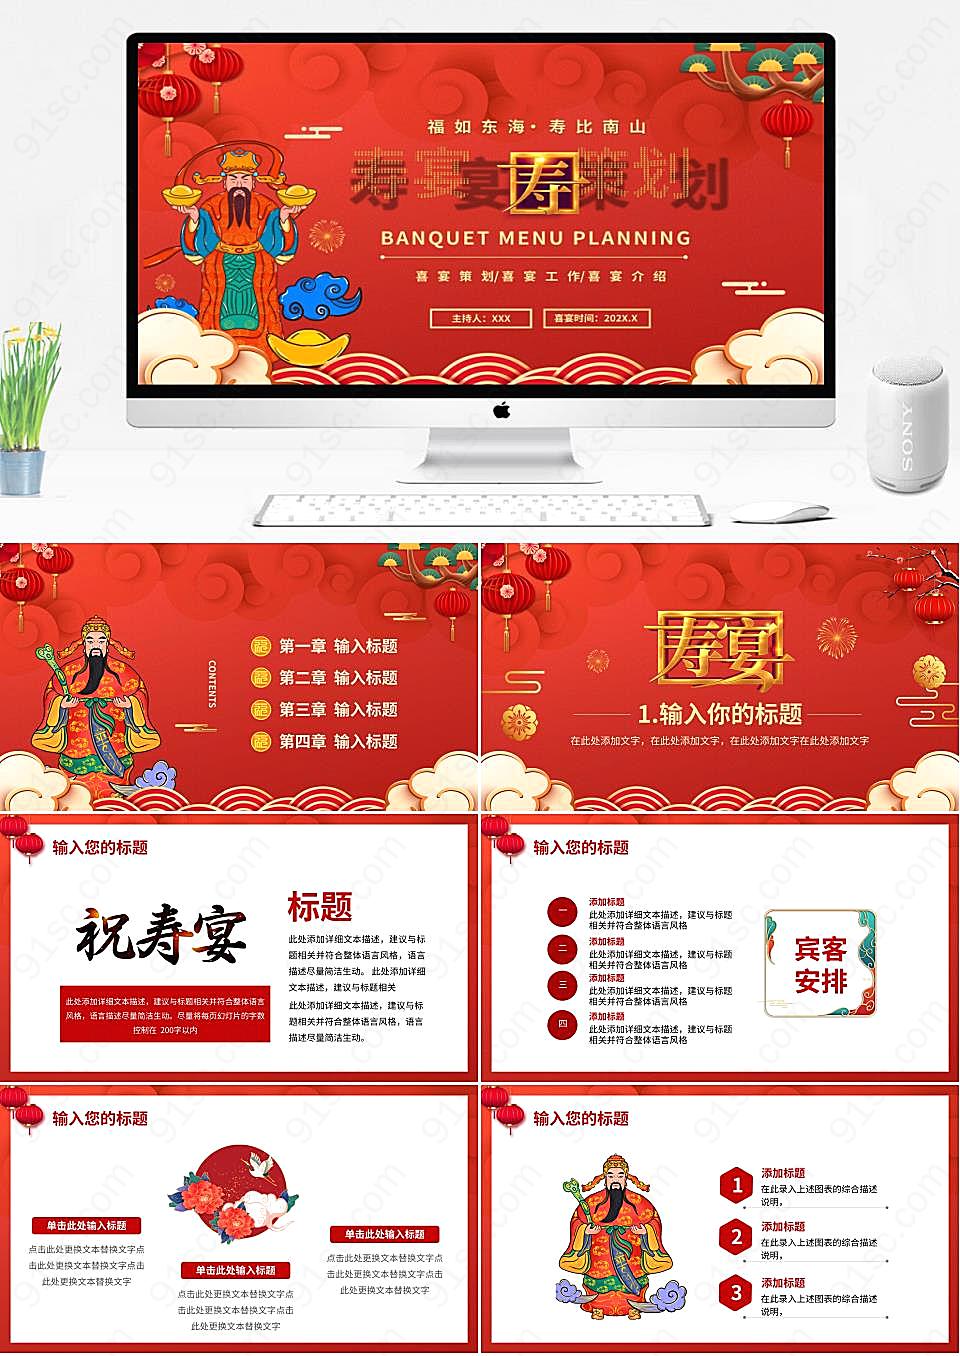 中国风格红色主题庆祝活动规划PPT模板其他节日庆典下载